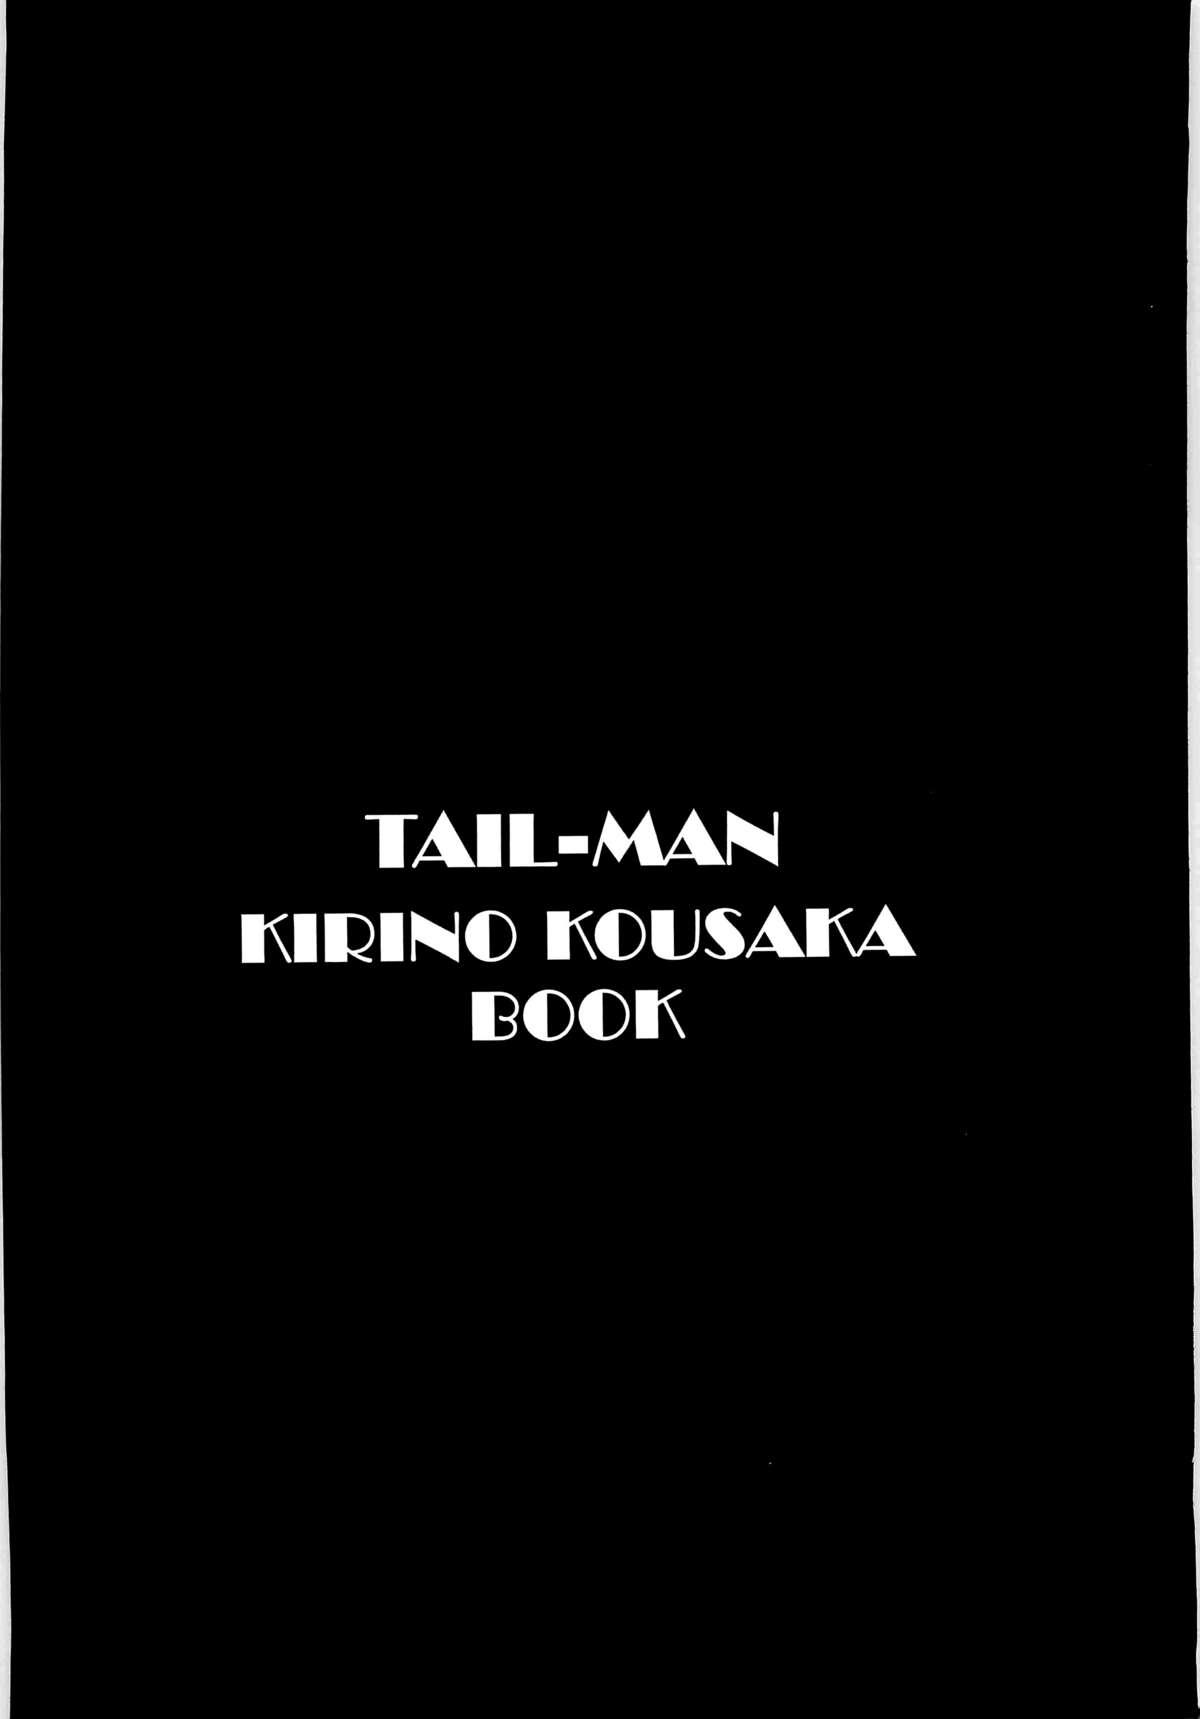 TAIL-MAN KIRINO KOUSAKA BOOK 1